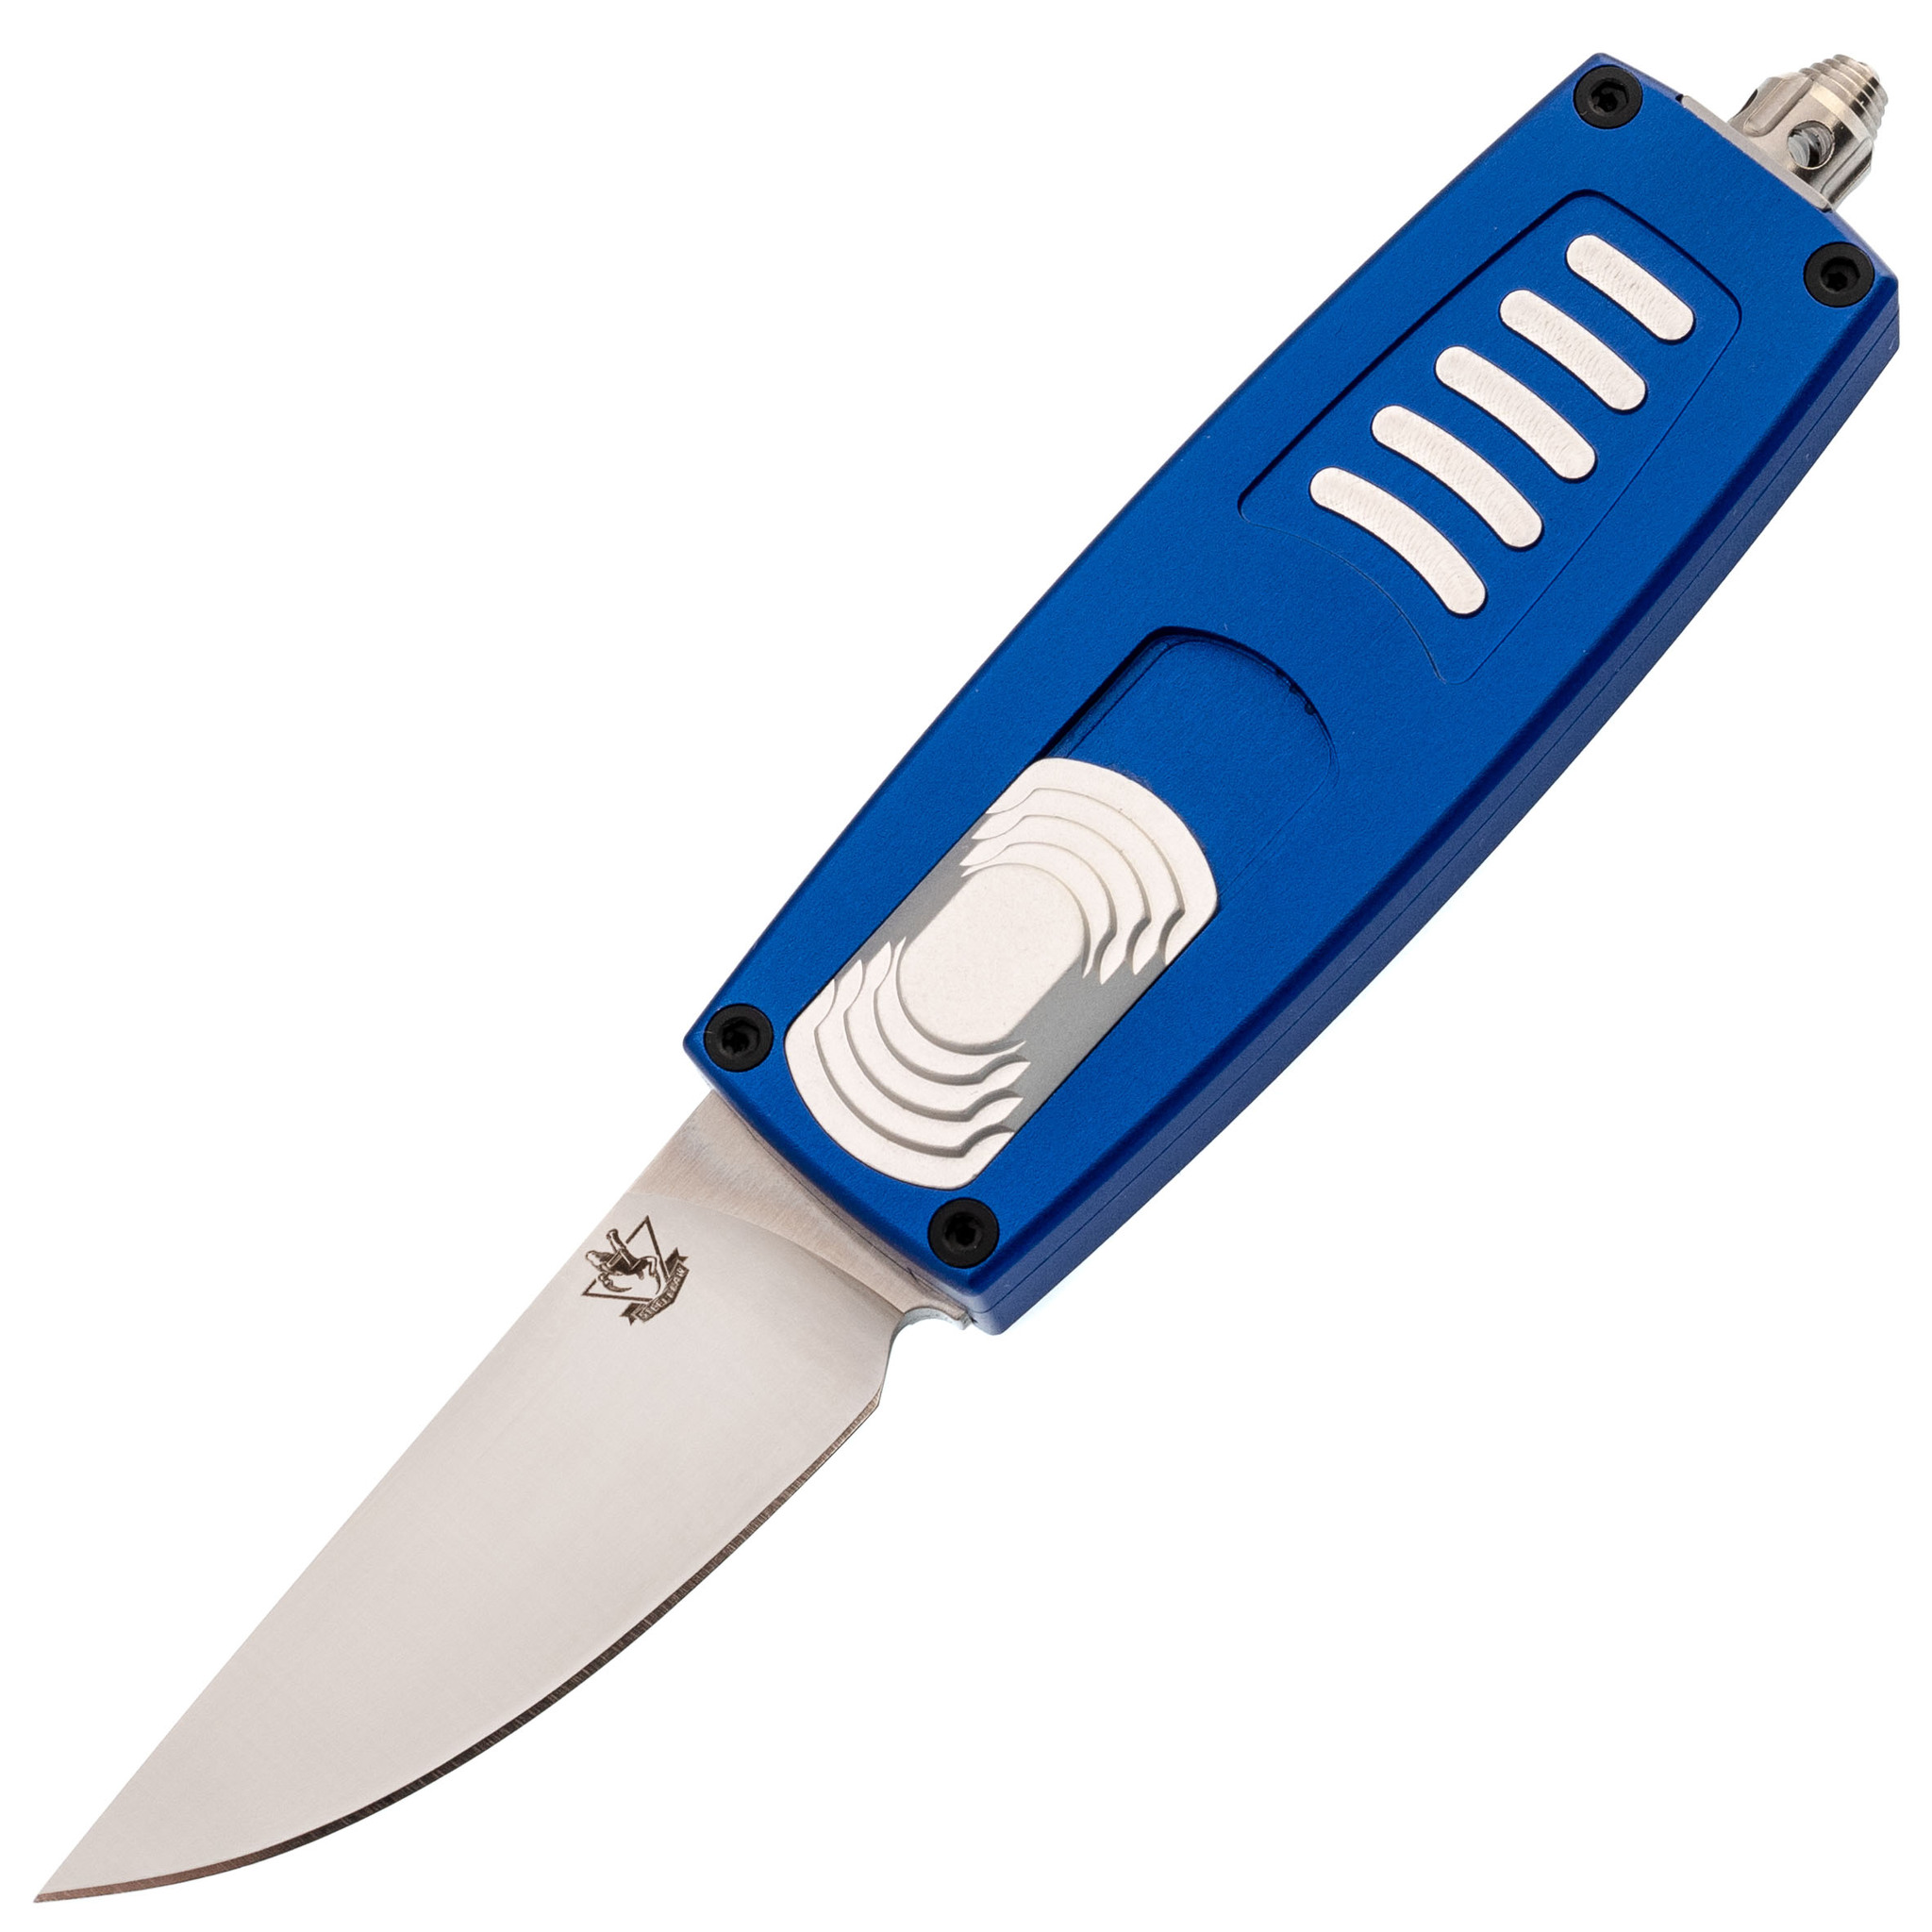 Автоматический нож Steelclaw Криптон-01, сталь D2, рукоять алюминий, синий